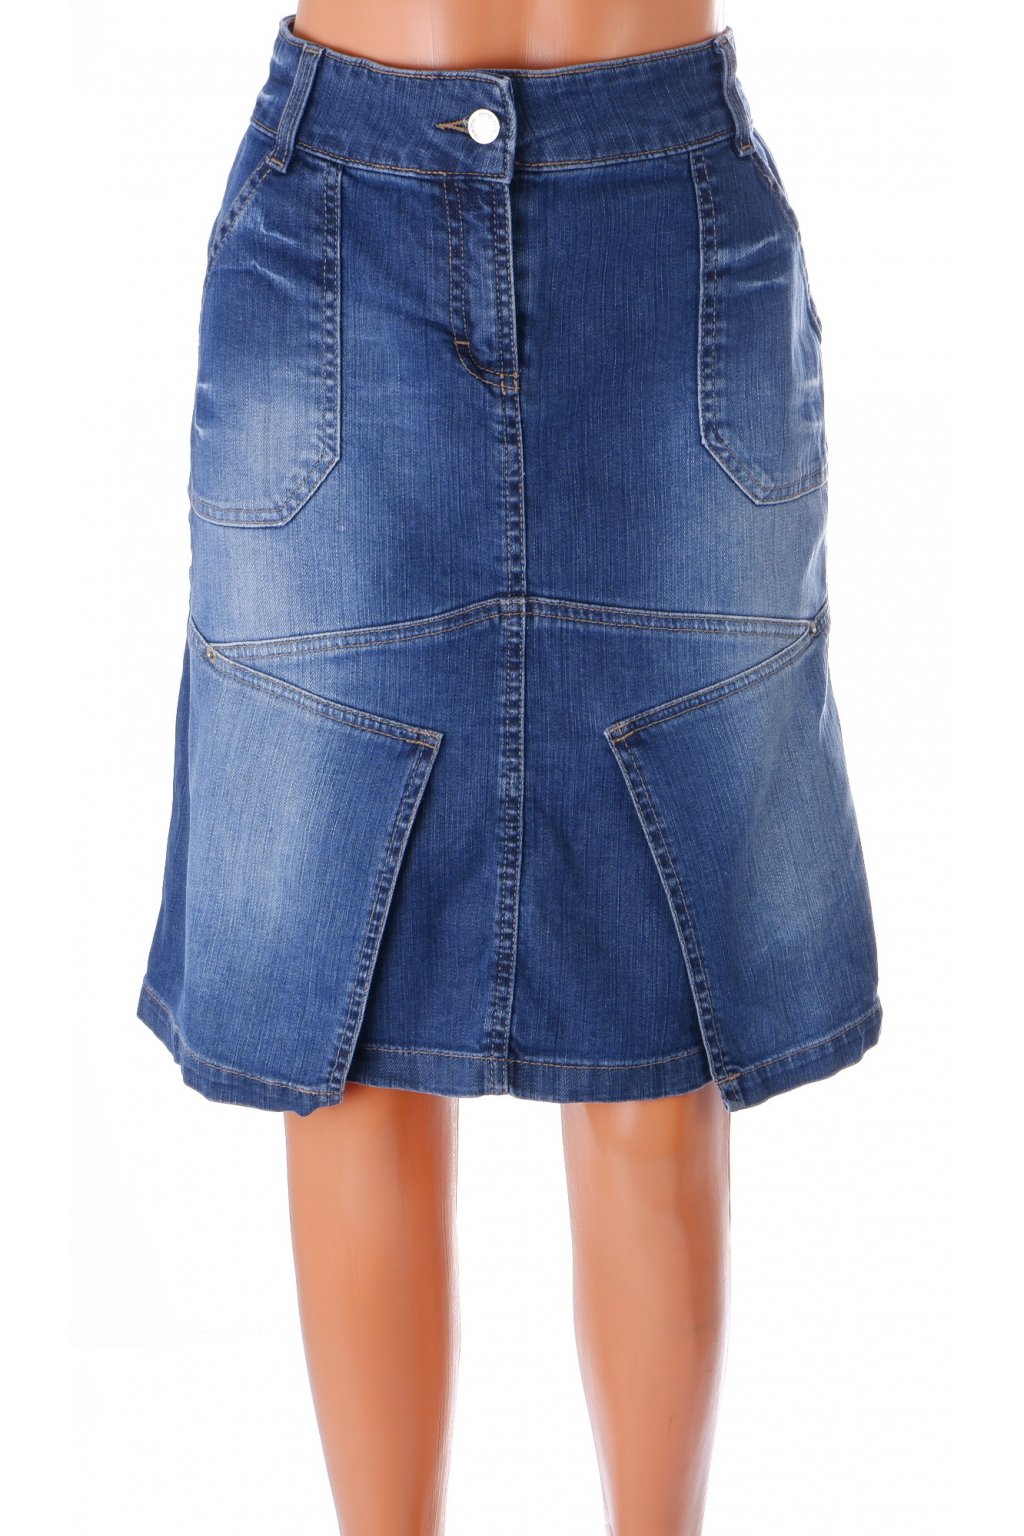 Sukně Promod riflová modrá mírně vyšisovaná s kapsami vel M - Second hand  online AXEL